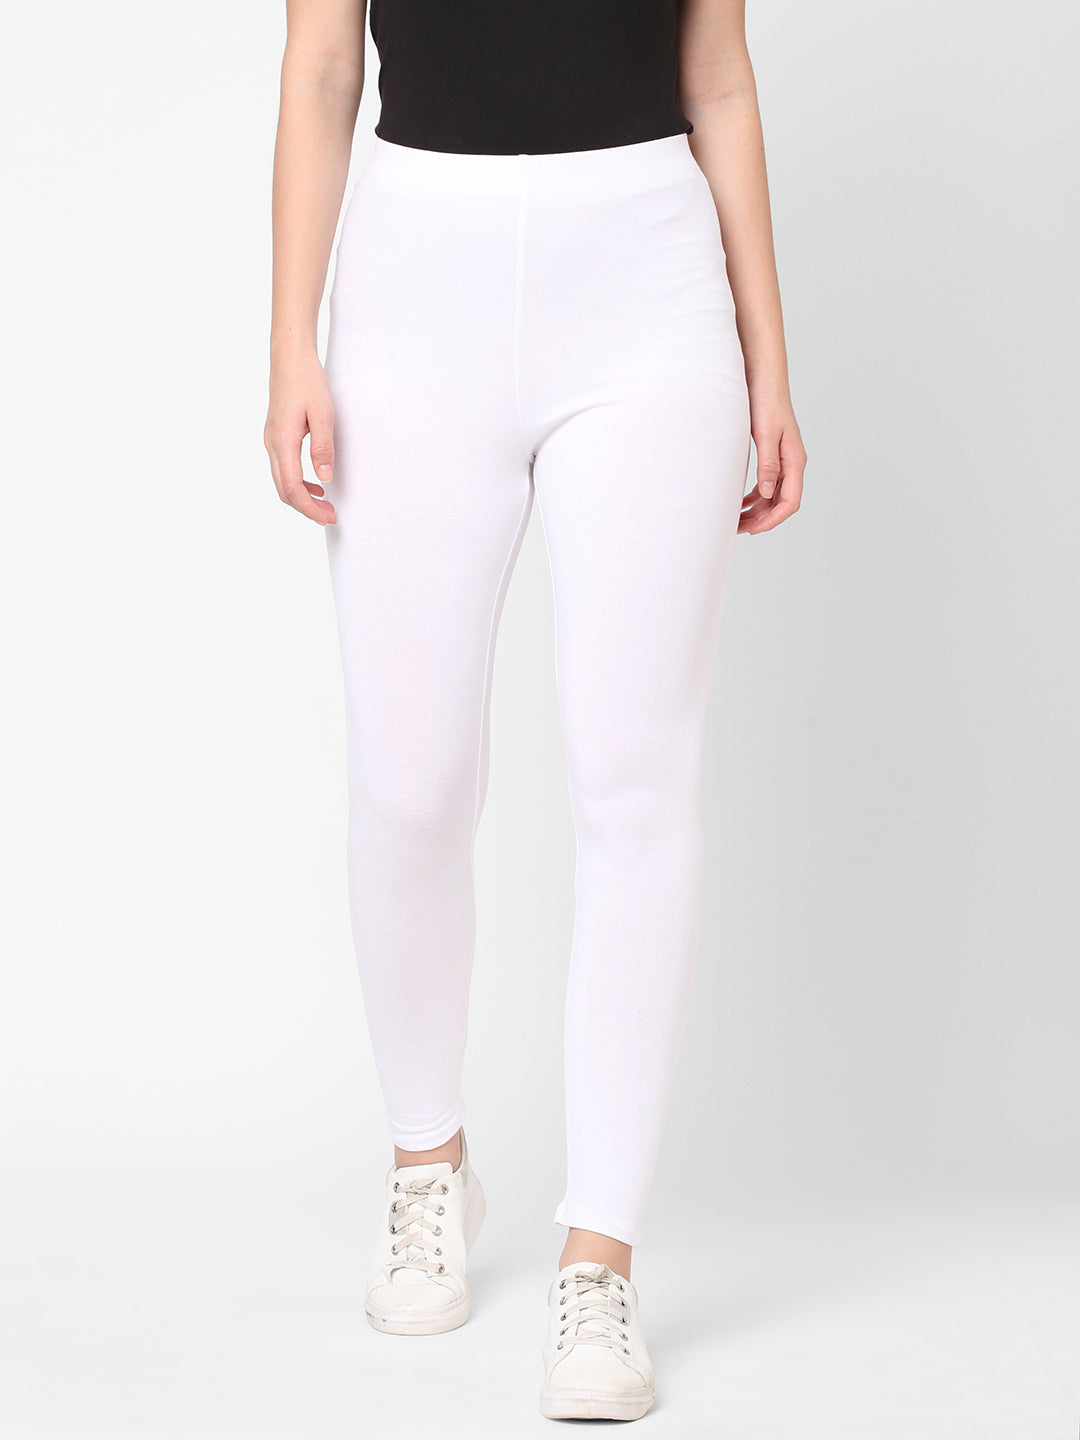 Women's Cotton Elastane White Slim Fit Ktights